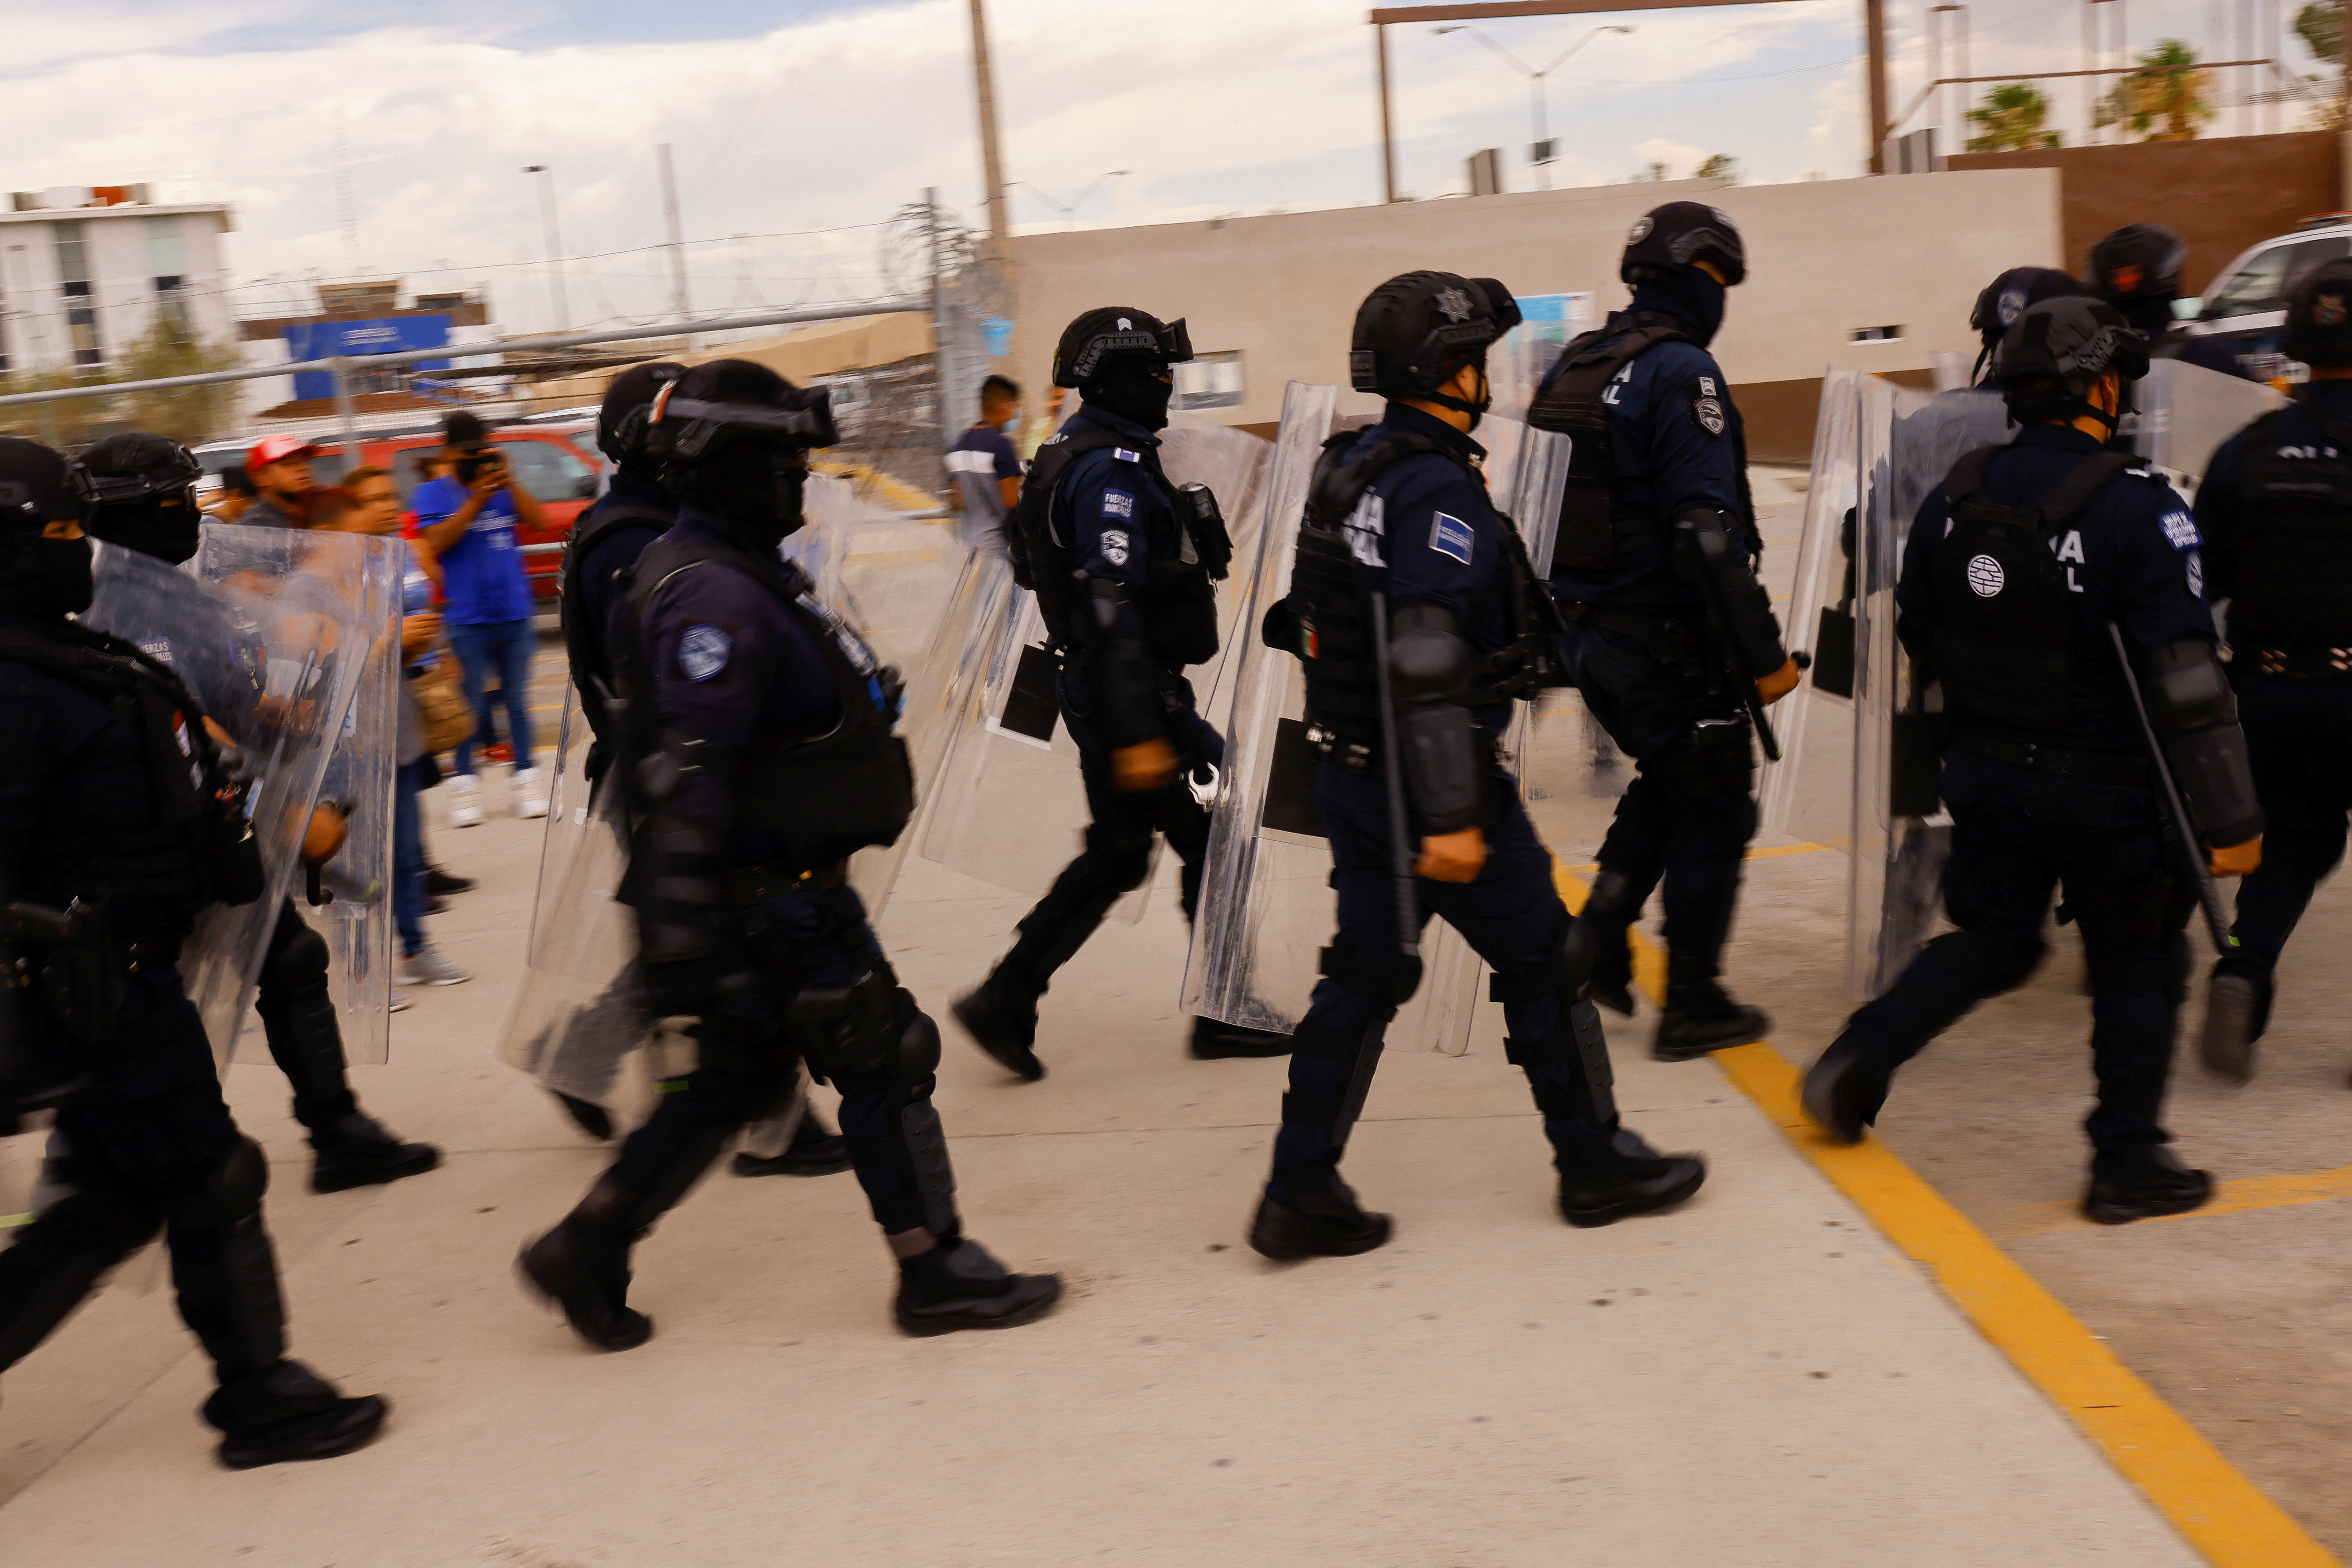 El control del centro carcelario ya fue retomado (Foto: REUTERS/Jose Luis Gonzalez)